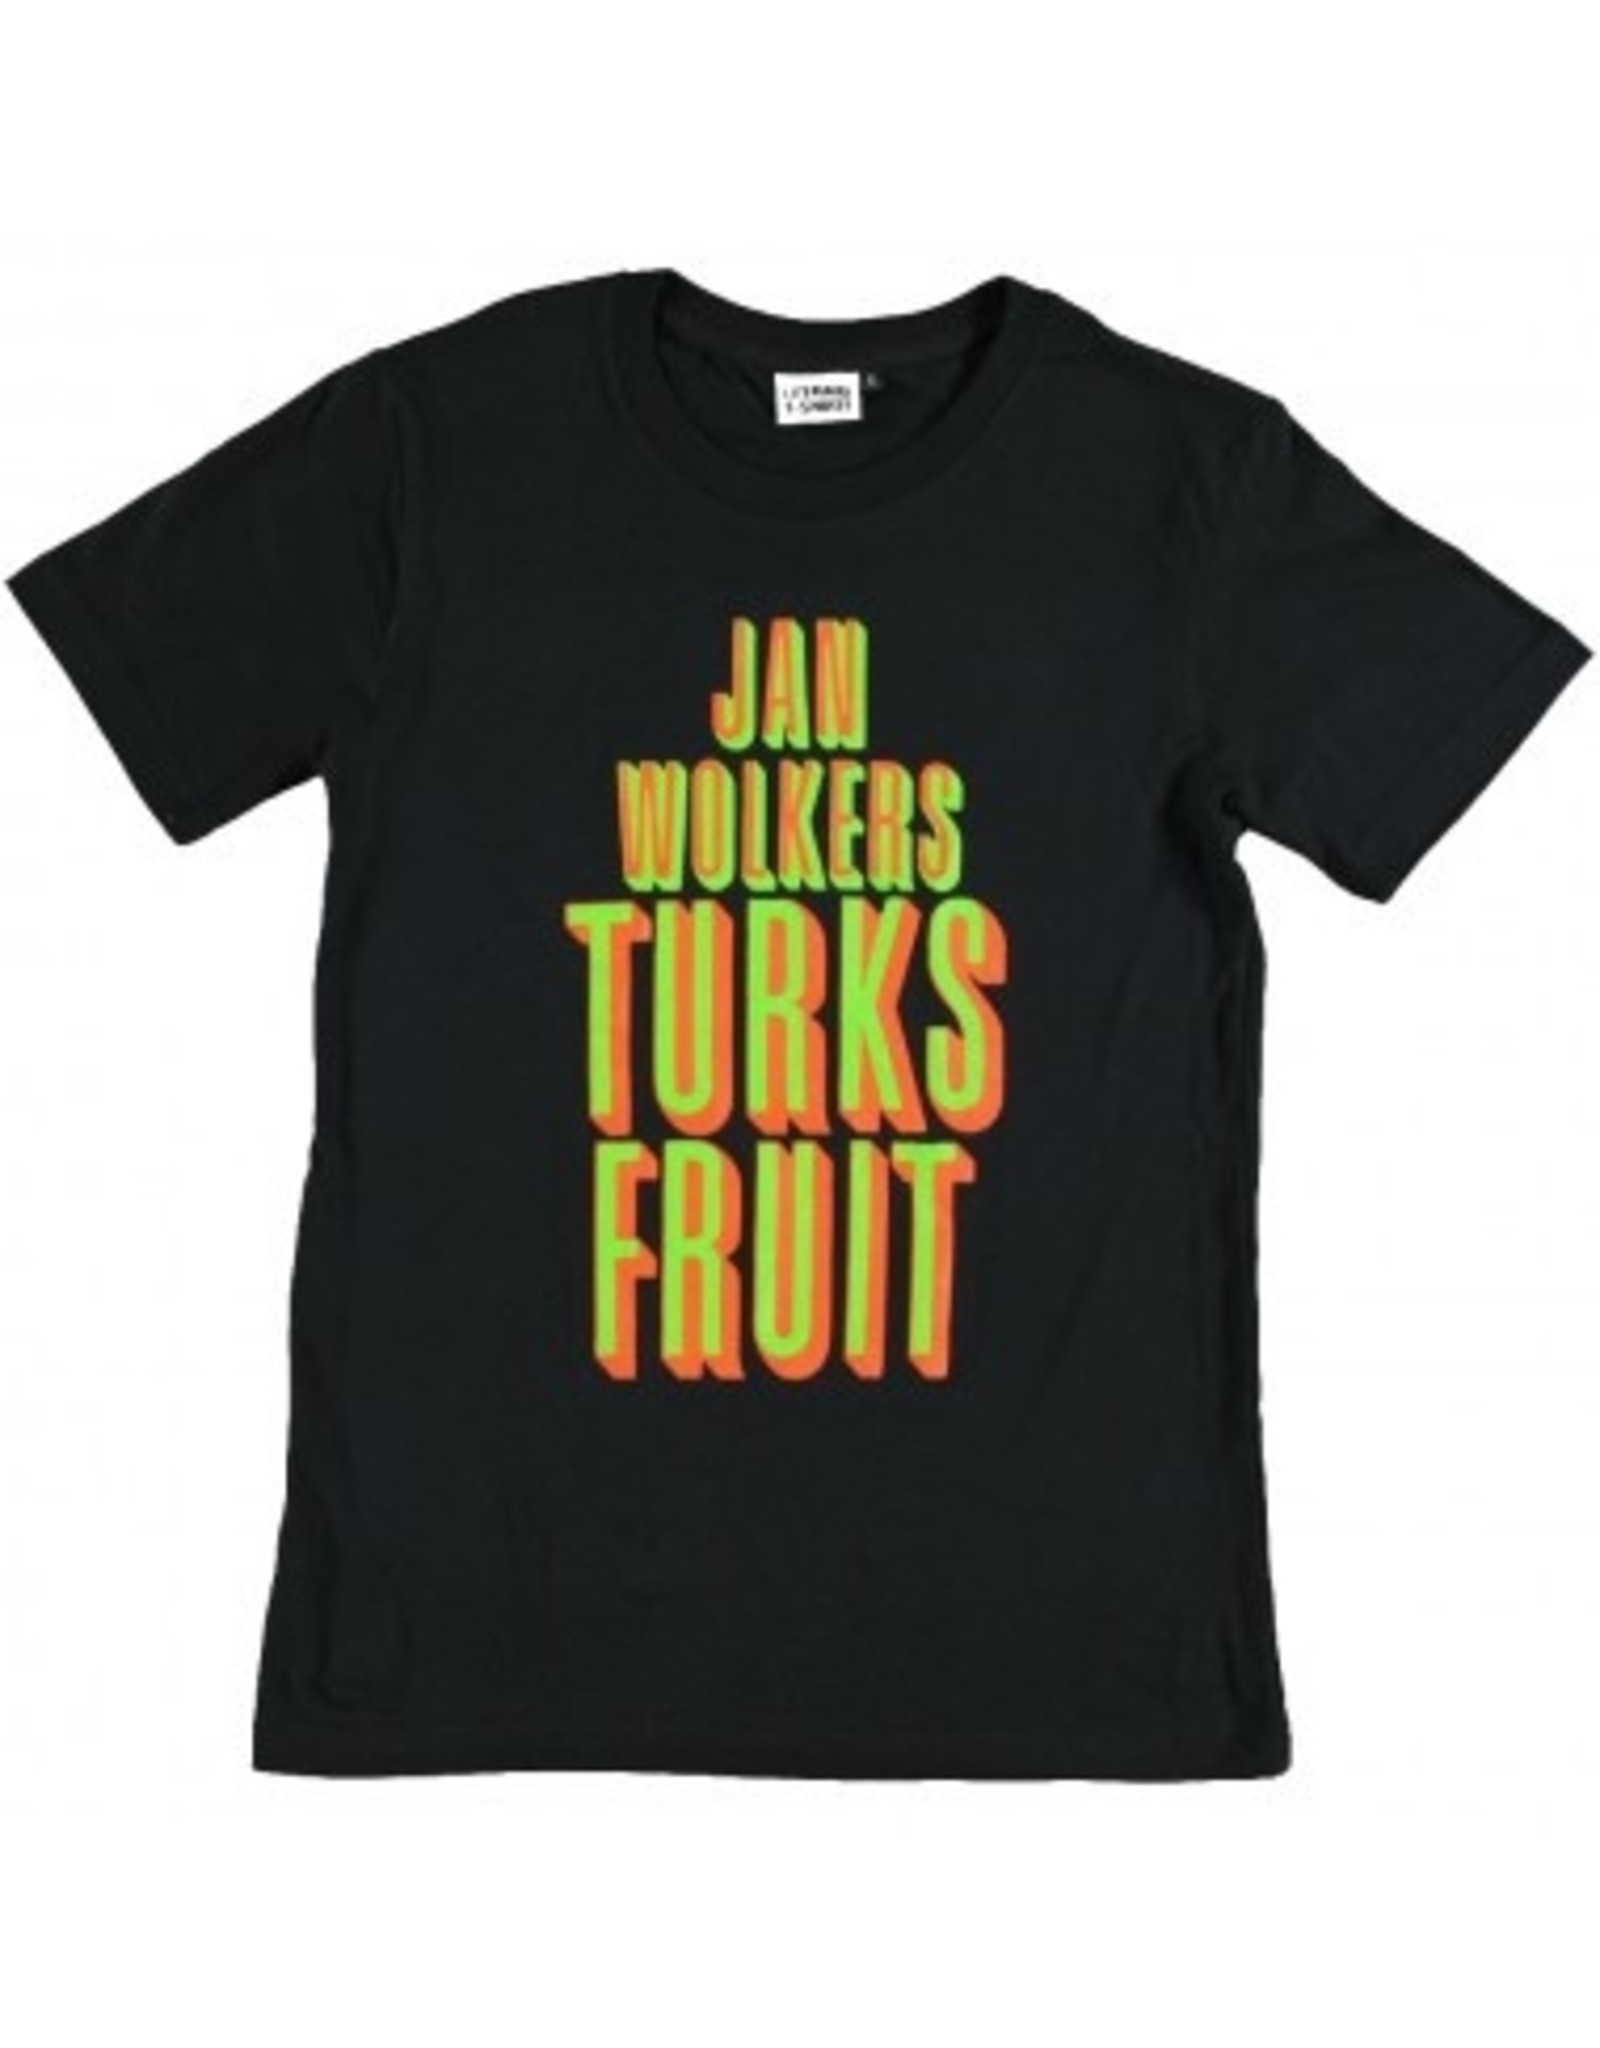 Jan Wolkers Turks Fruit ♂